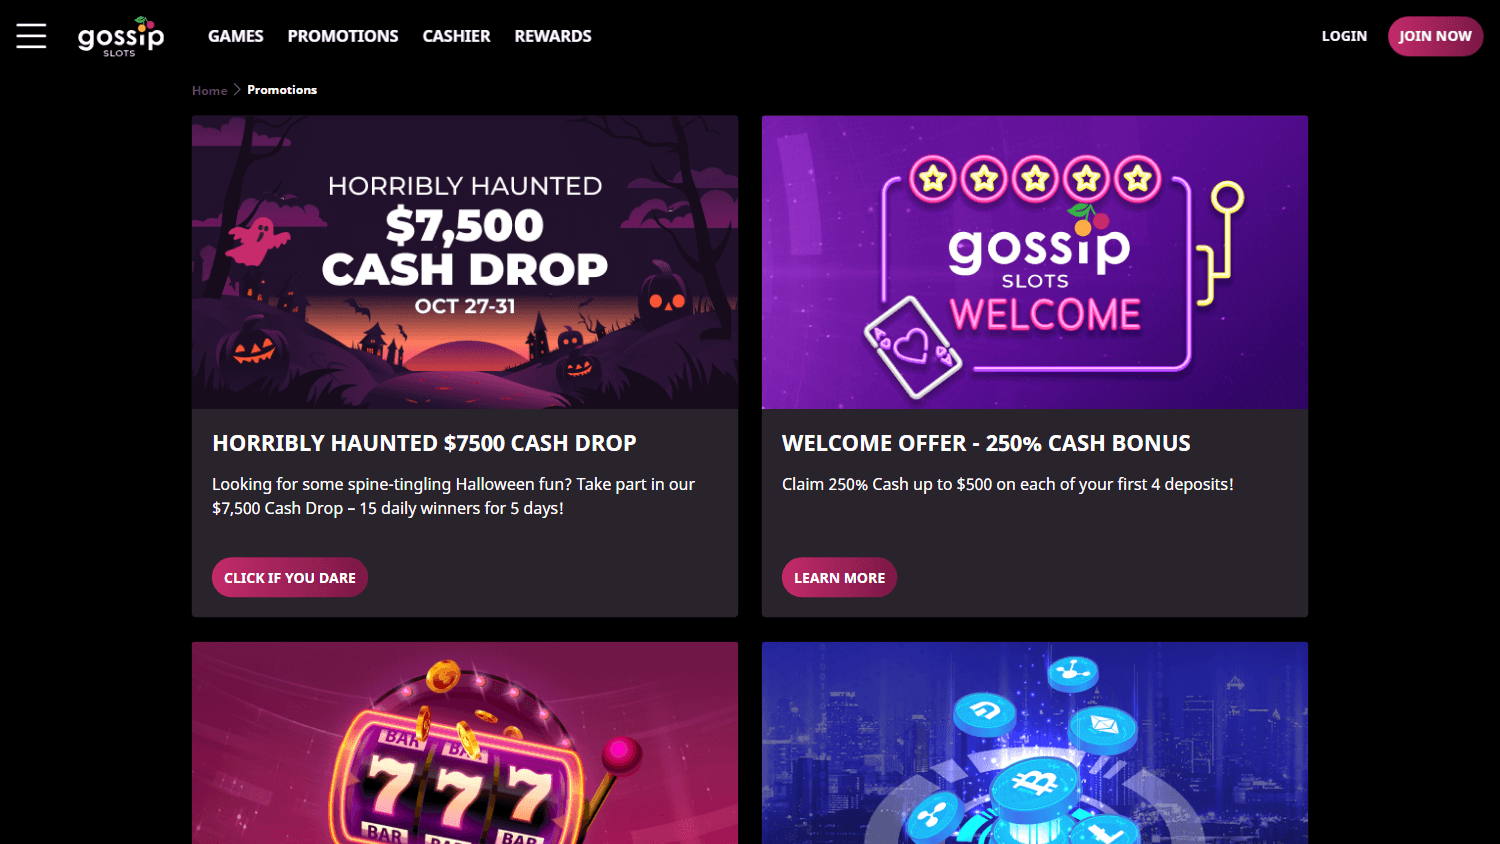 gossip_slots_casino_promotions_desktop